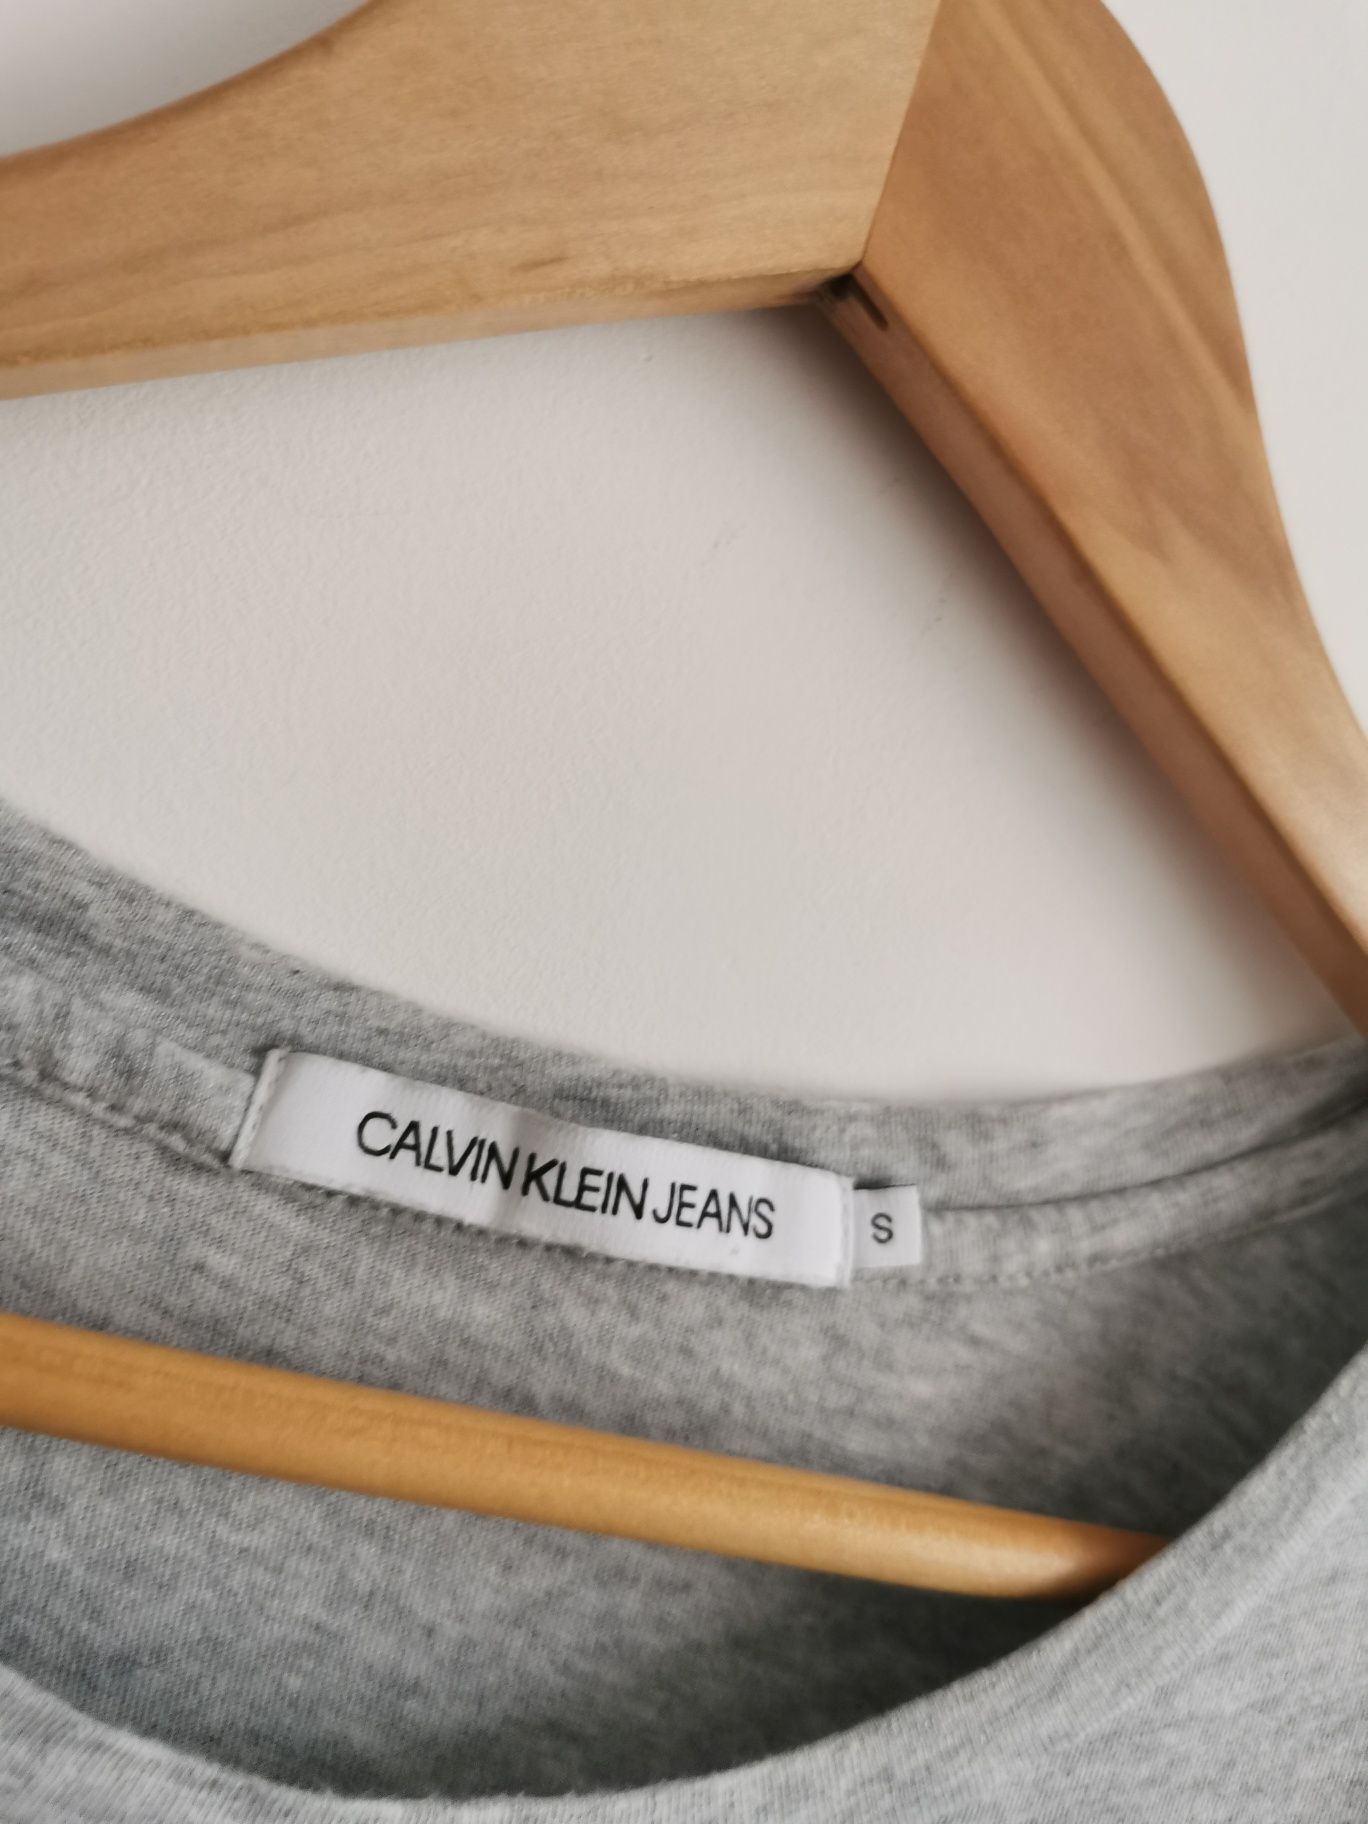 Calvin Klein t-shirt koszulka krótki rękaw sportowa S/M